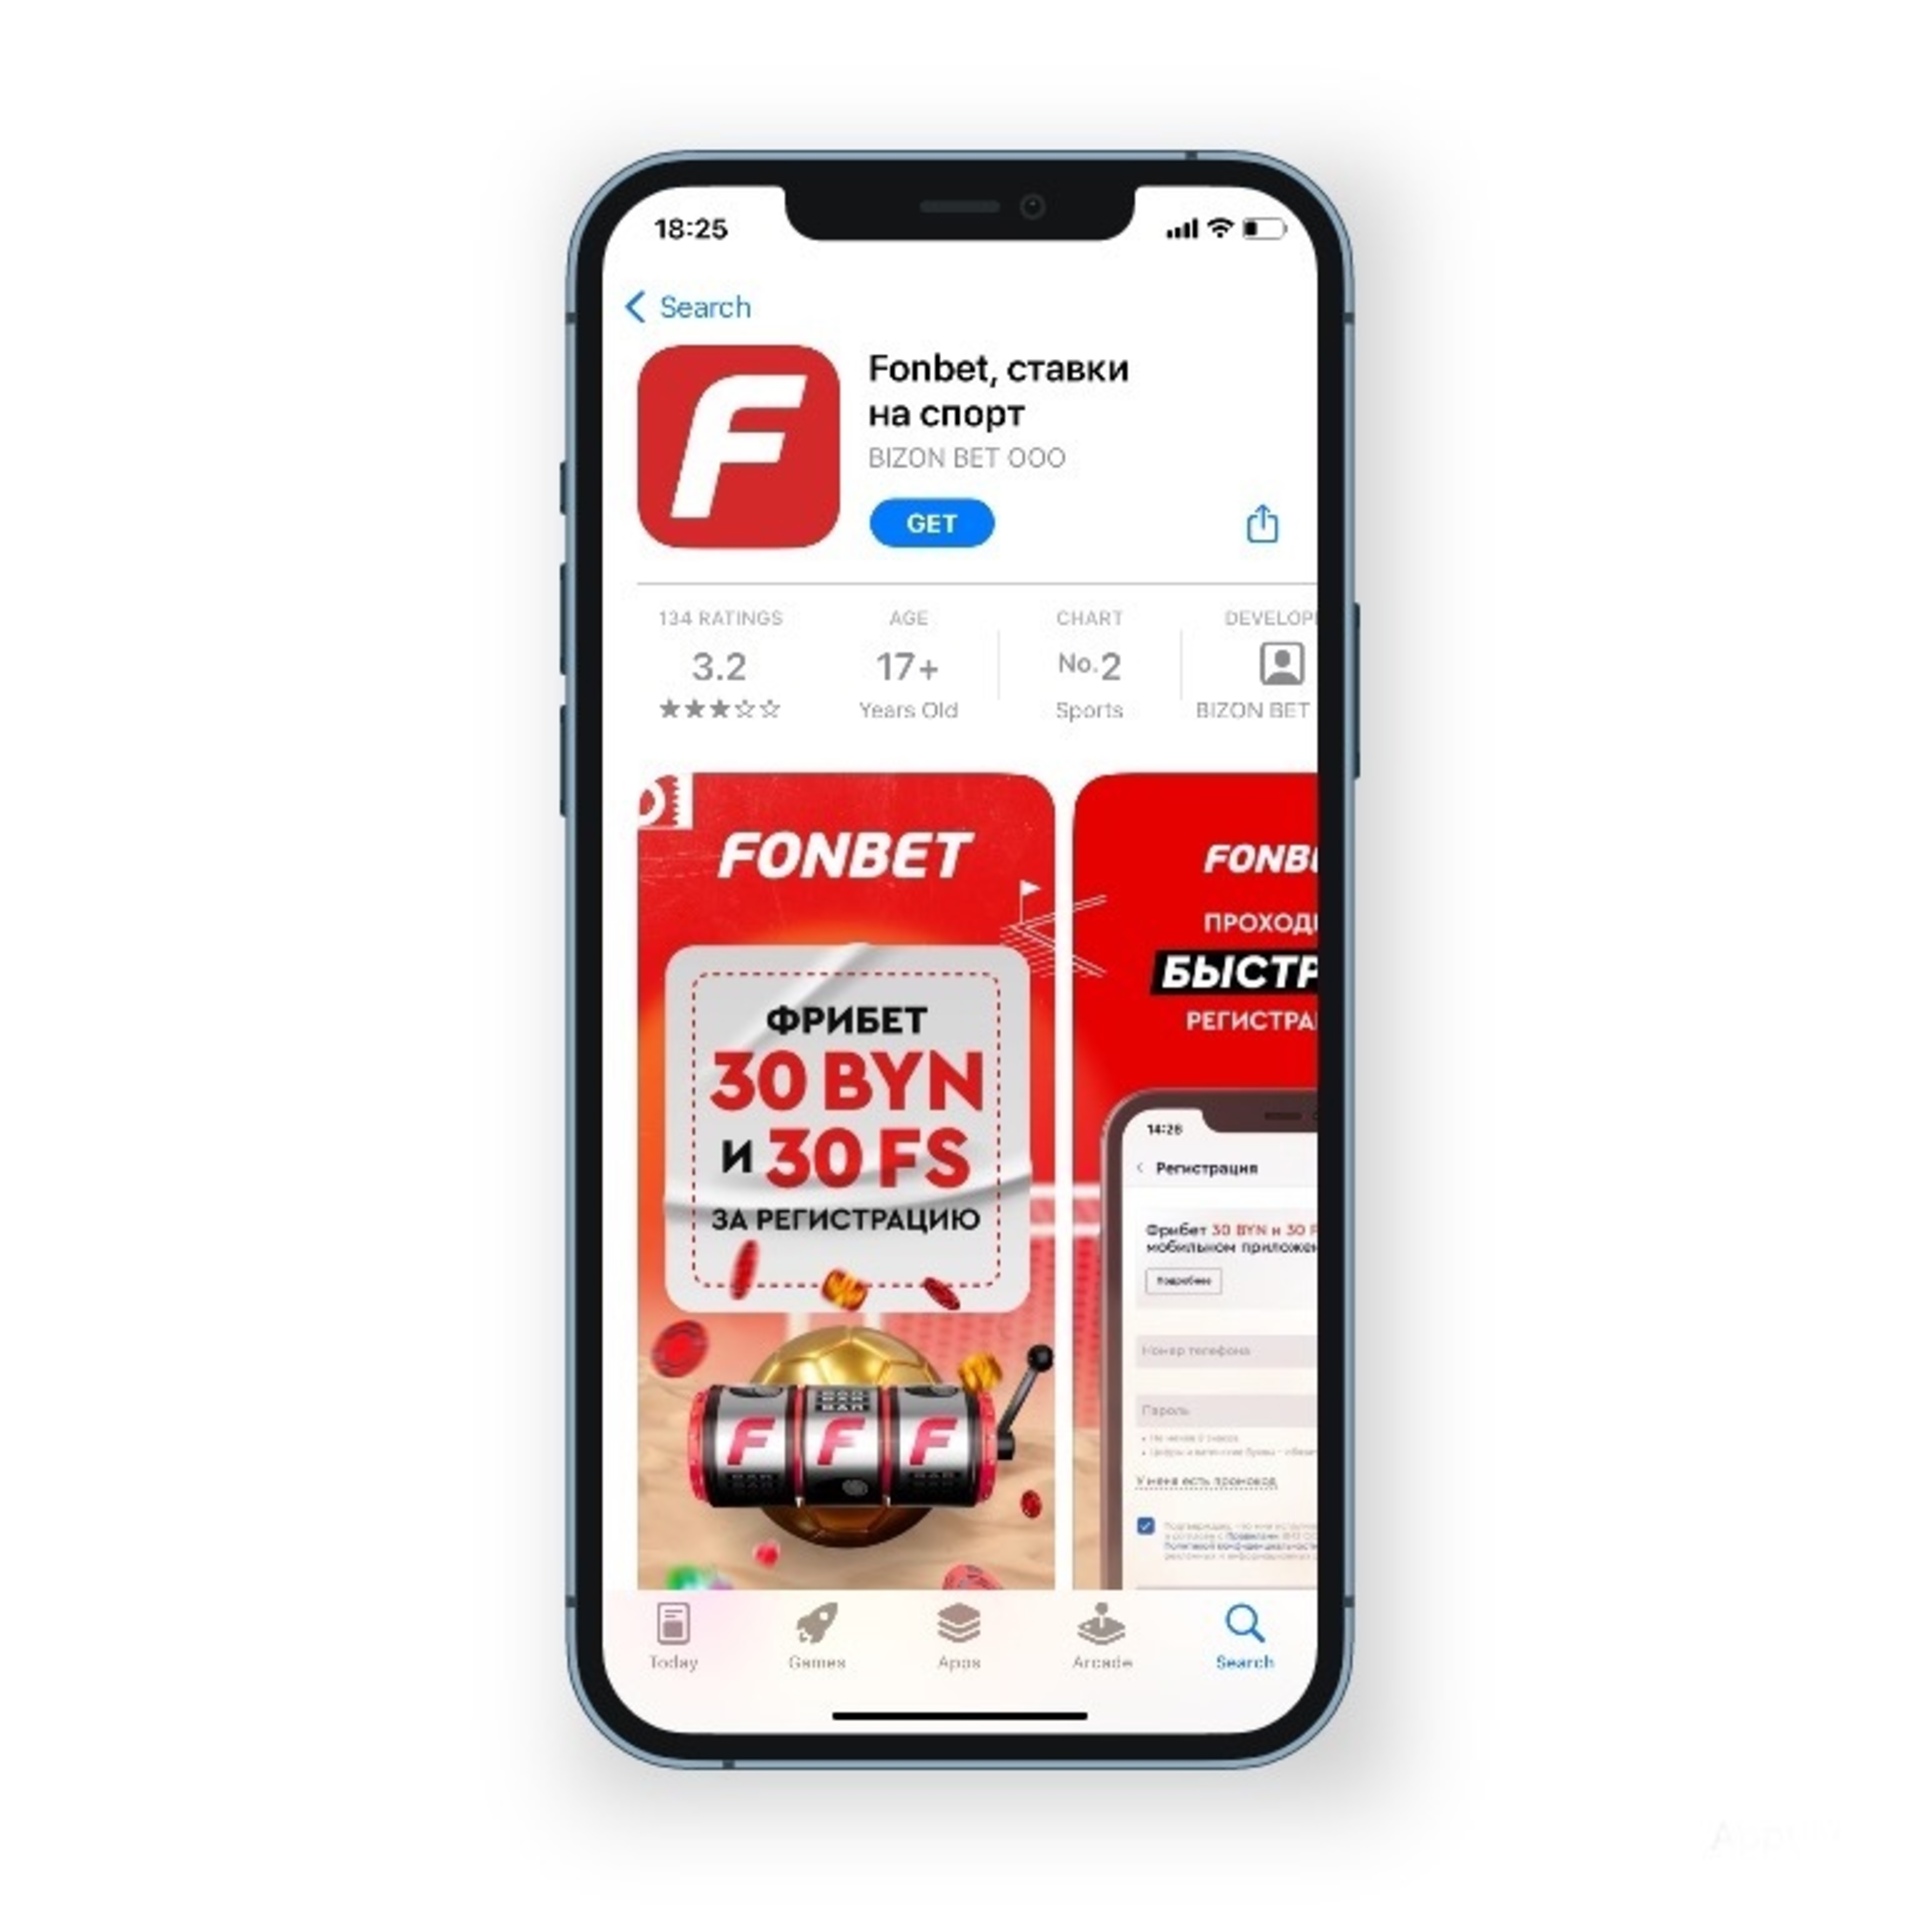 как скачать fonbet из app store